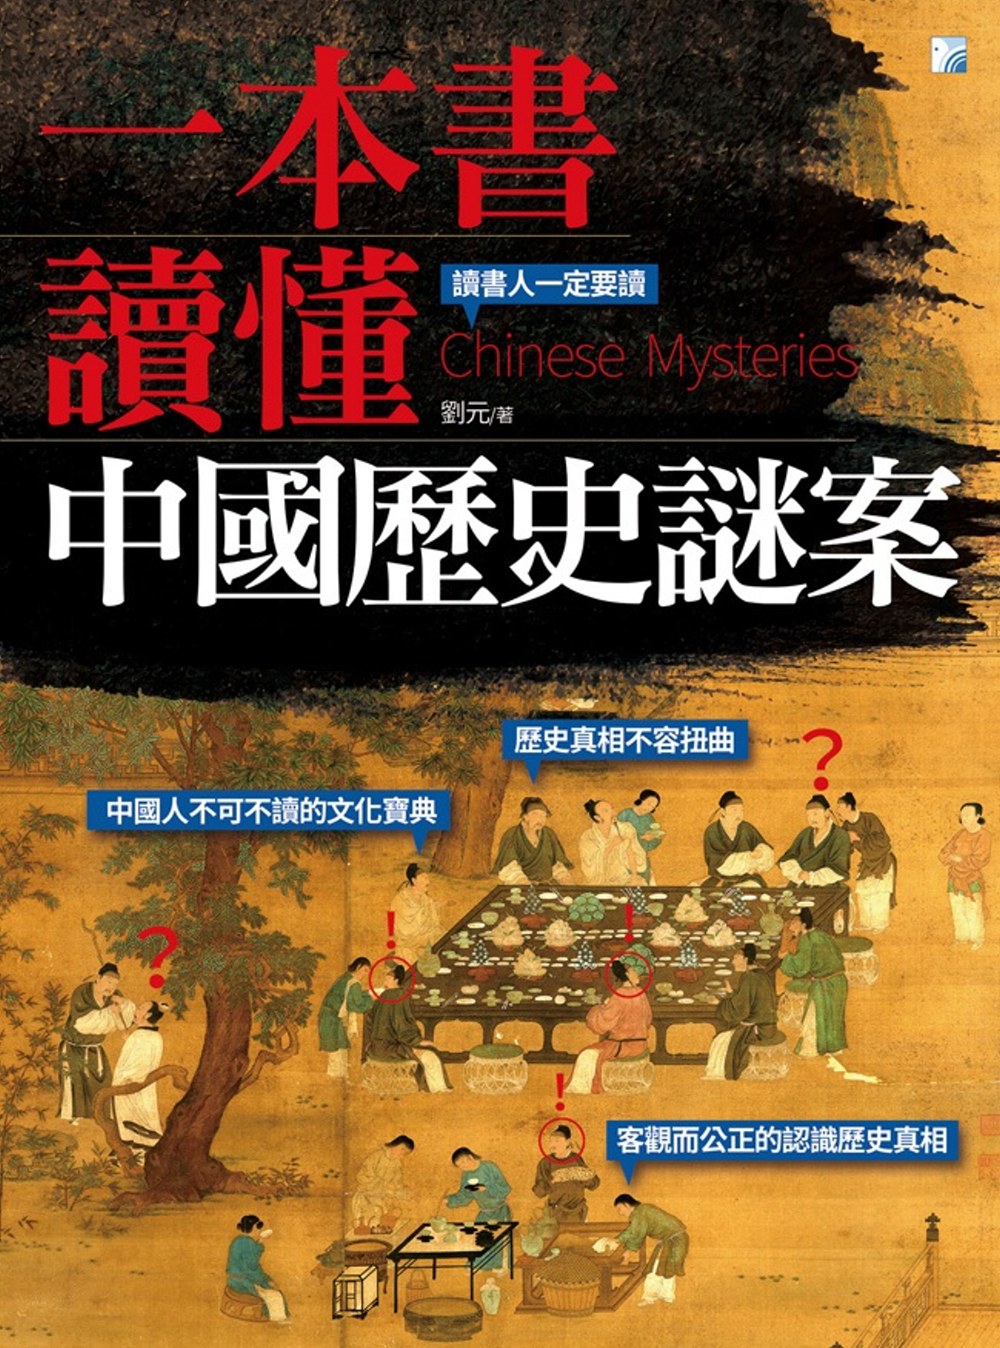 一本書讀懂中國歷史謎案